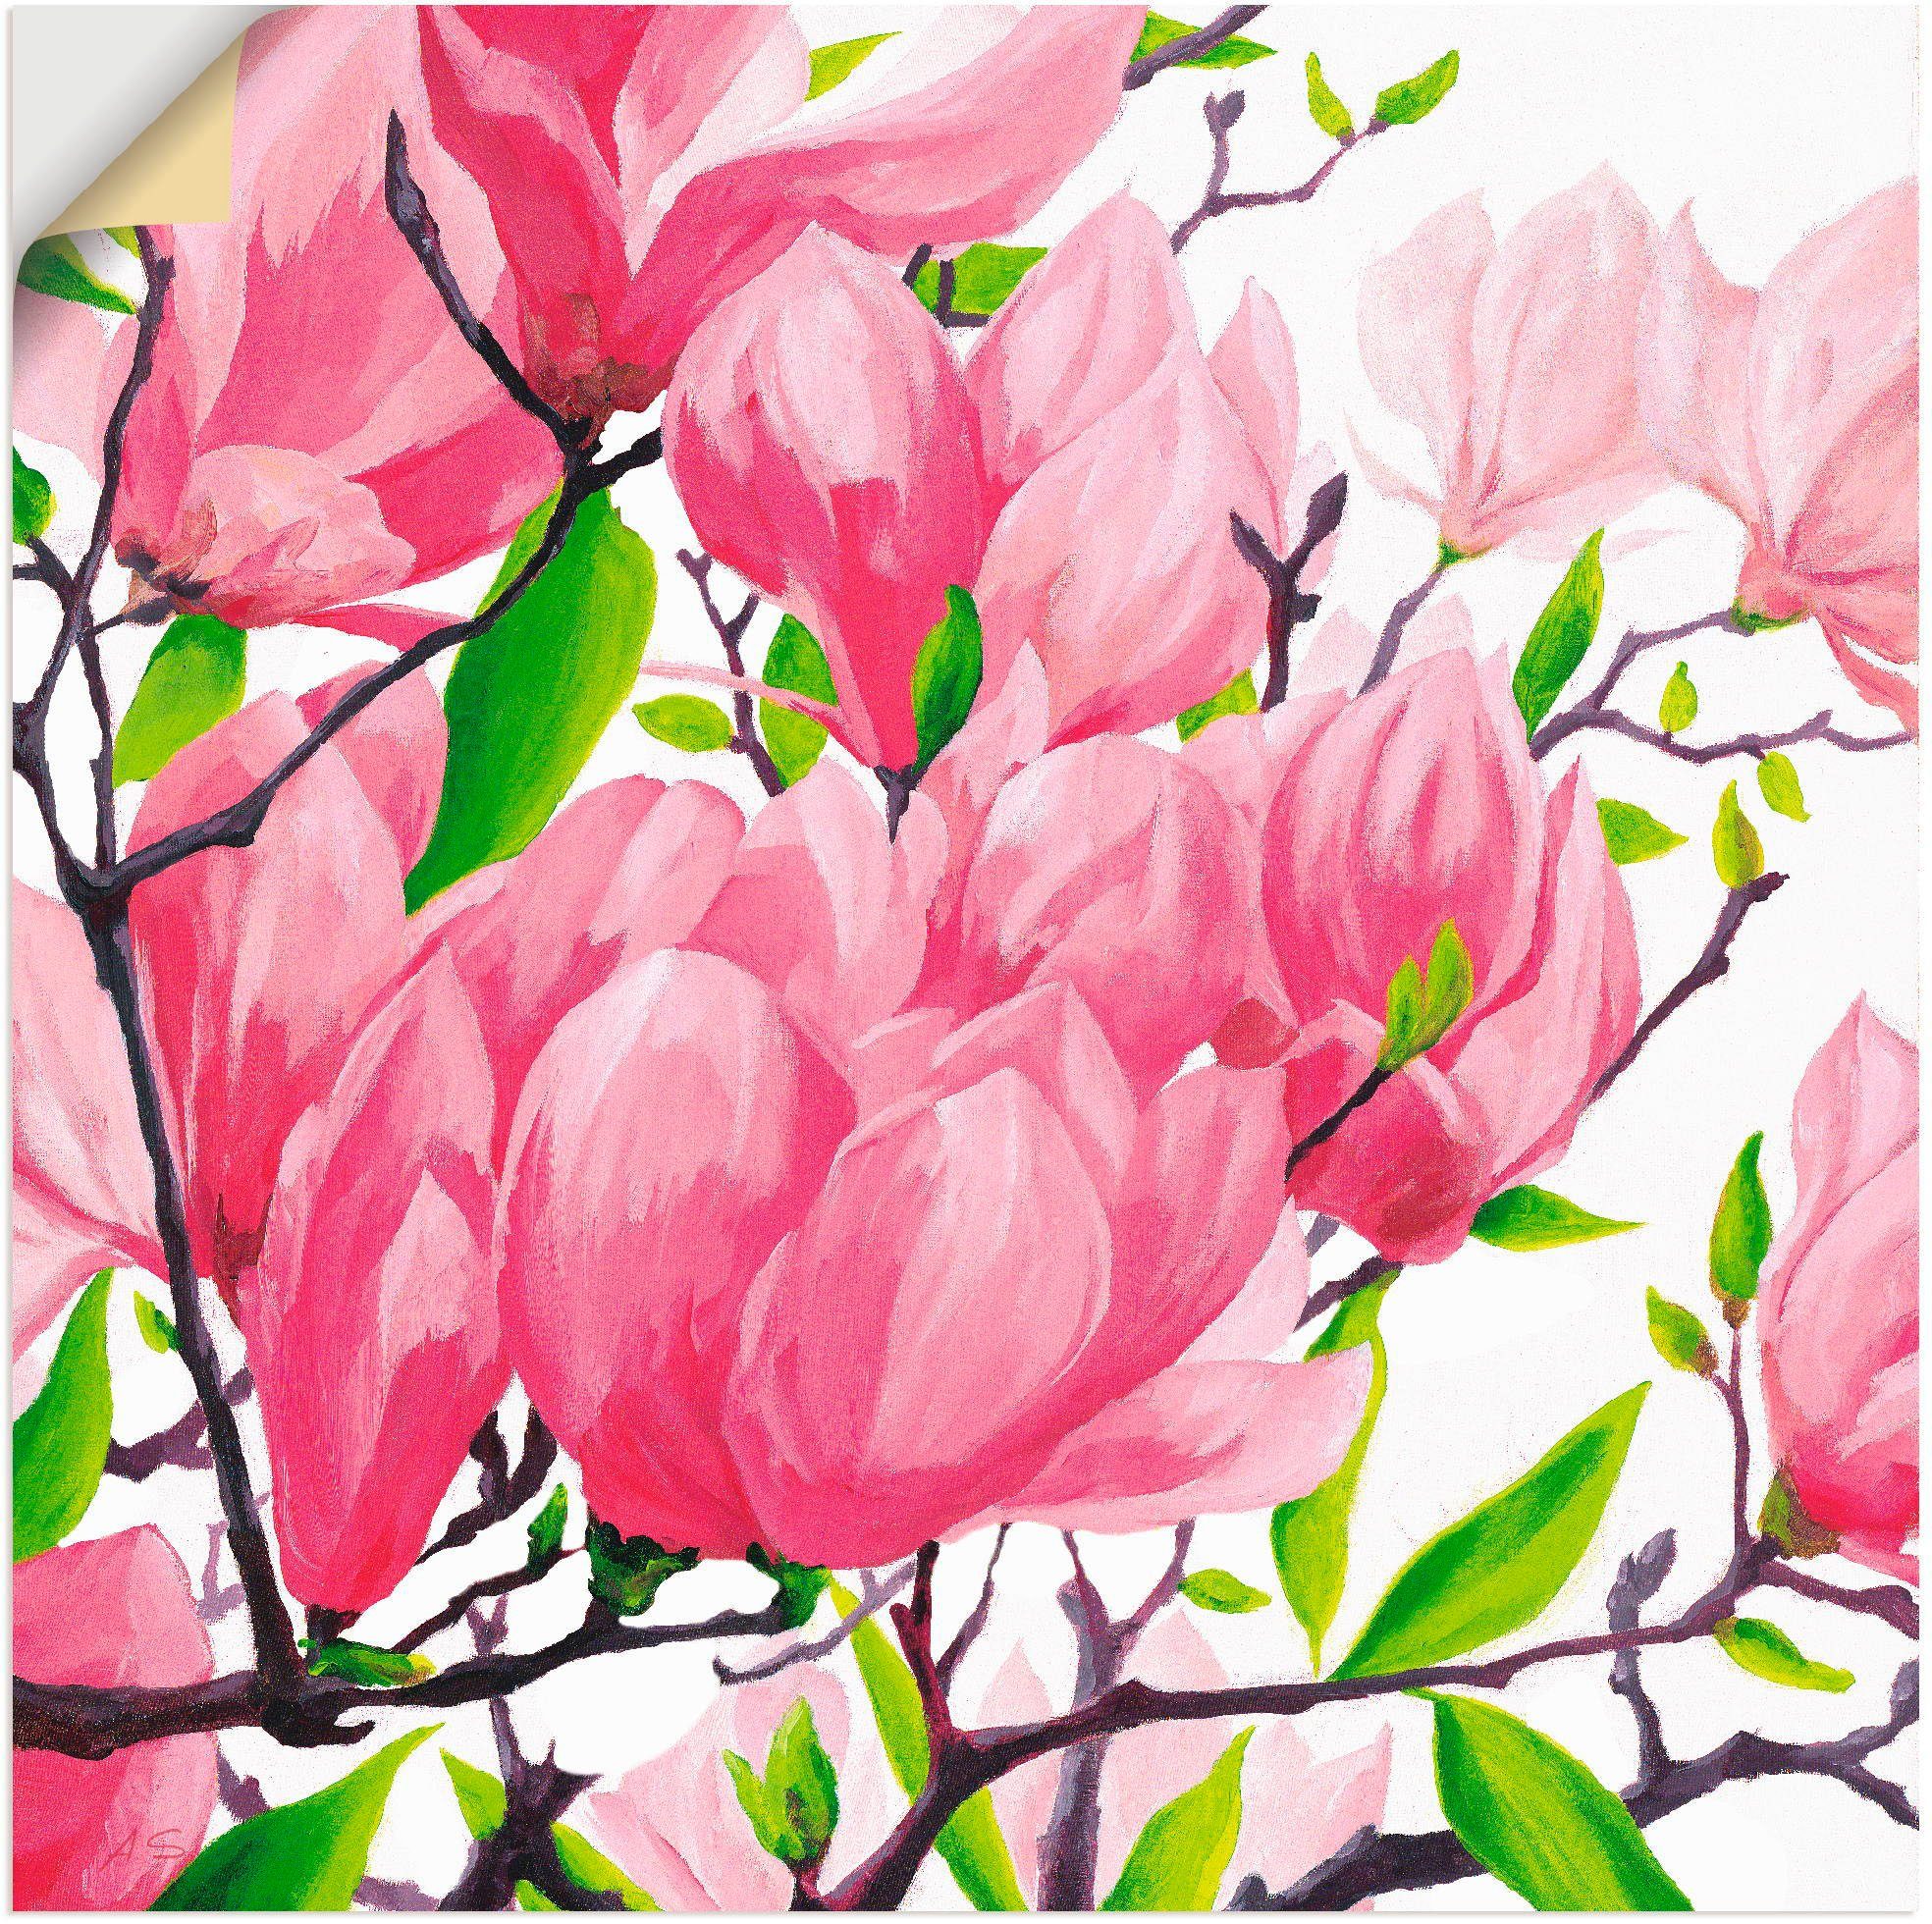 Artland Artprint Pinkkleurige magnolia's in vele afmetingen & productsoorten - artprint van aluminium / artprint voor buiten, artprint op linnen, poster, muursticker / wandfolie oo